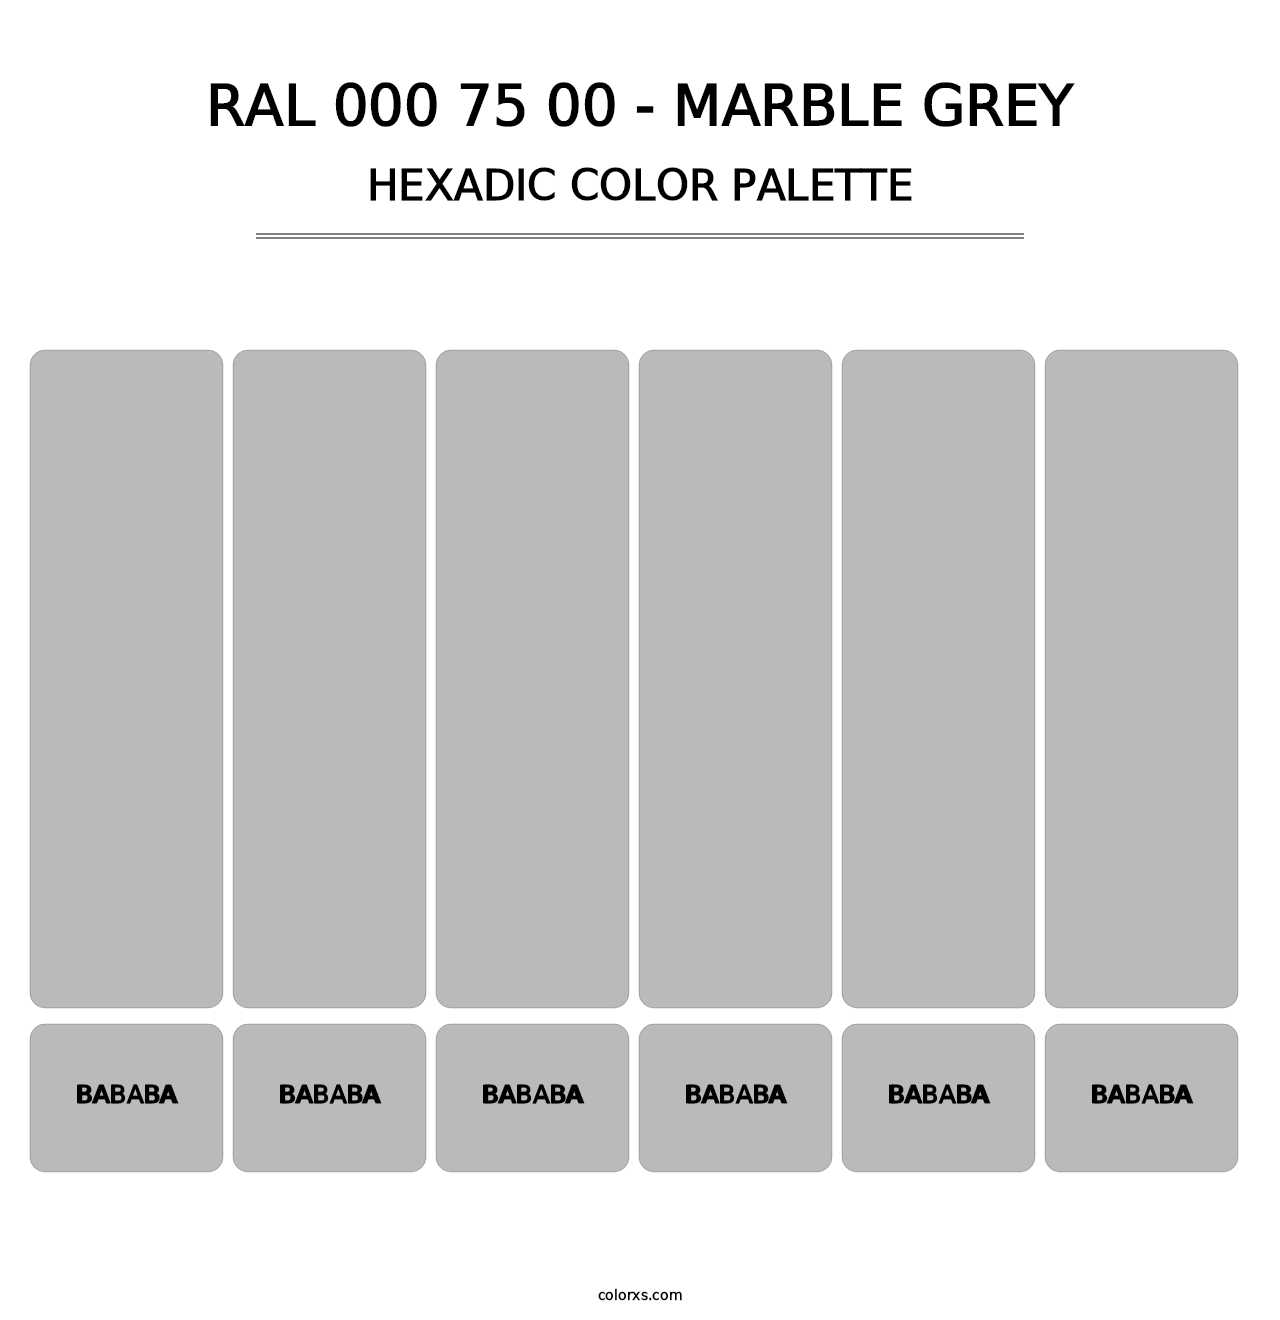 RAL 000 75 00 - Marble Grey - Hexadic Color Palette